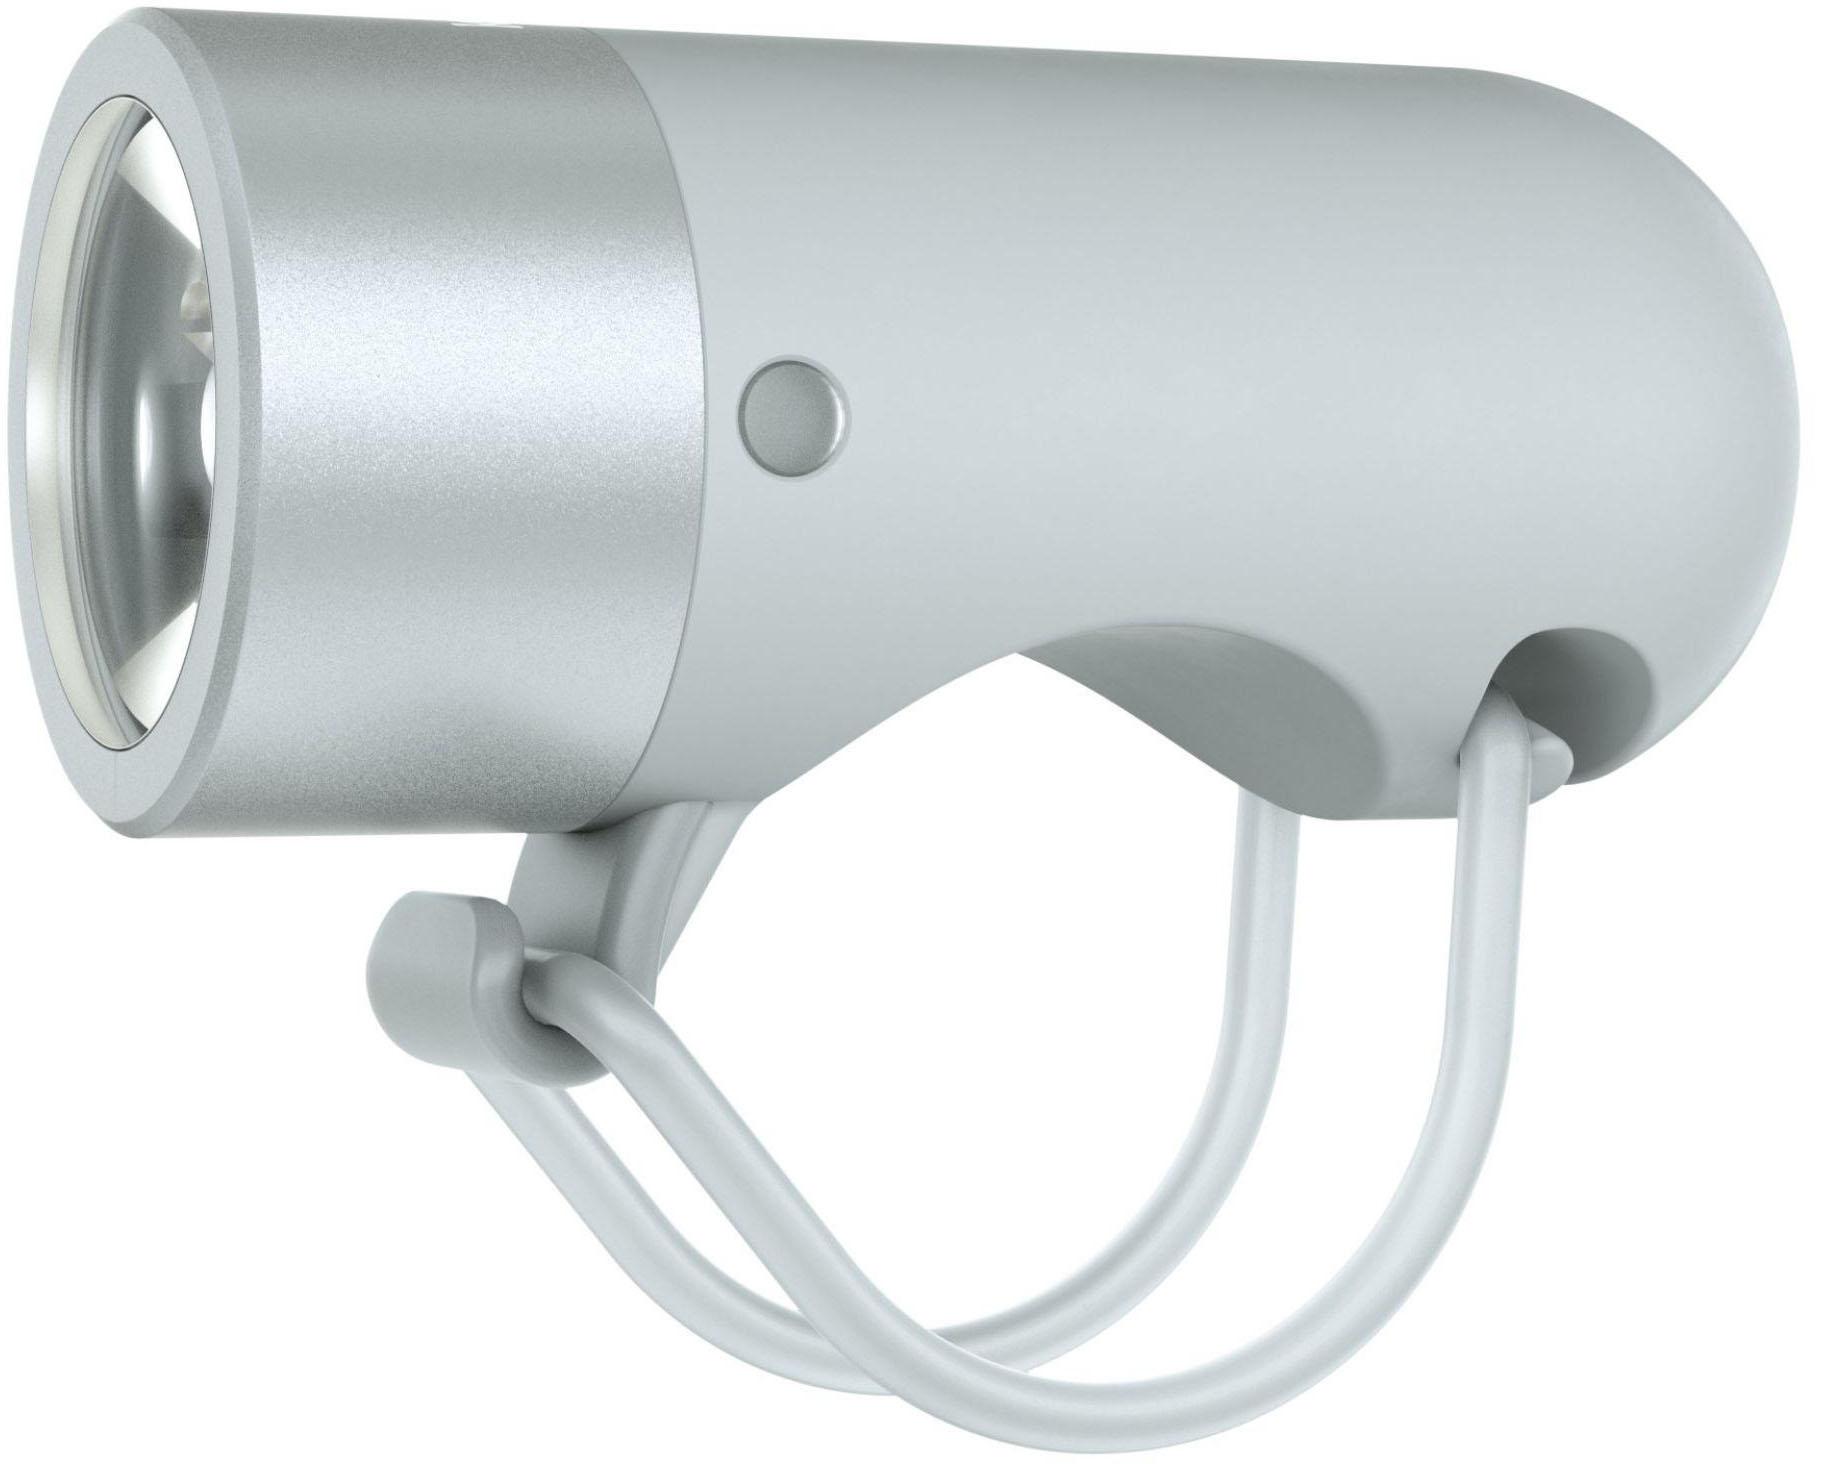 Knog Plug Front Light - Grey